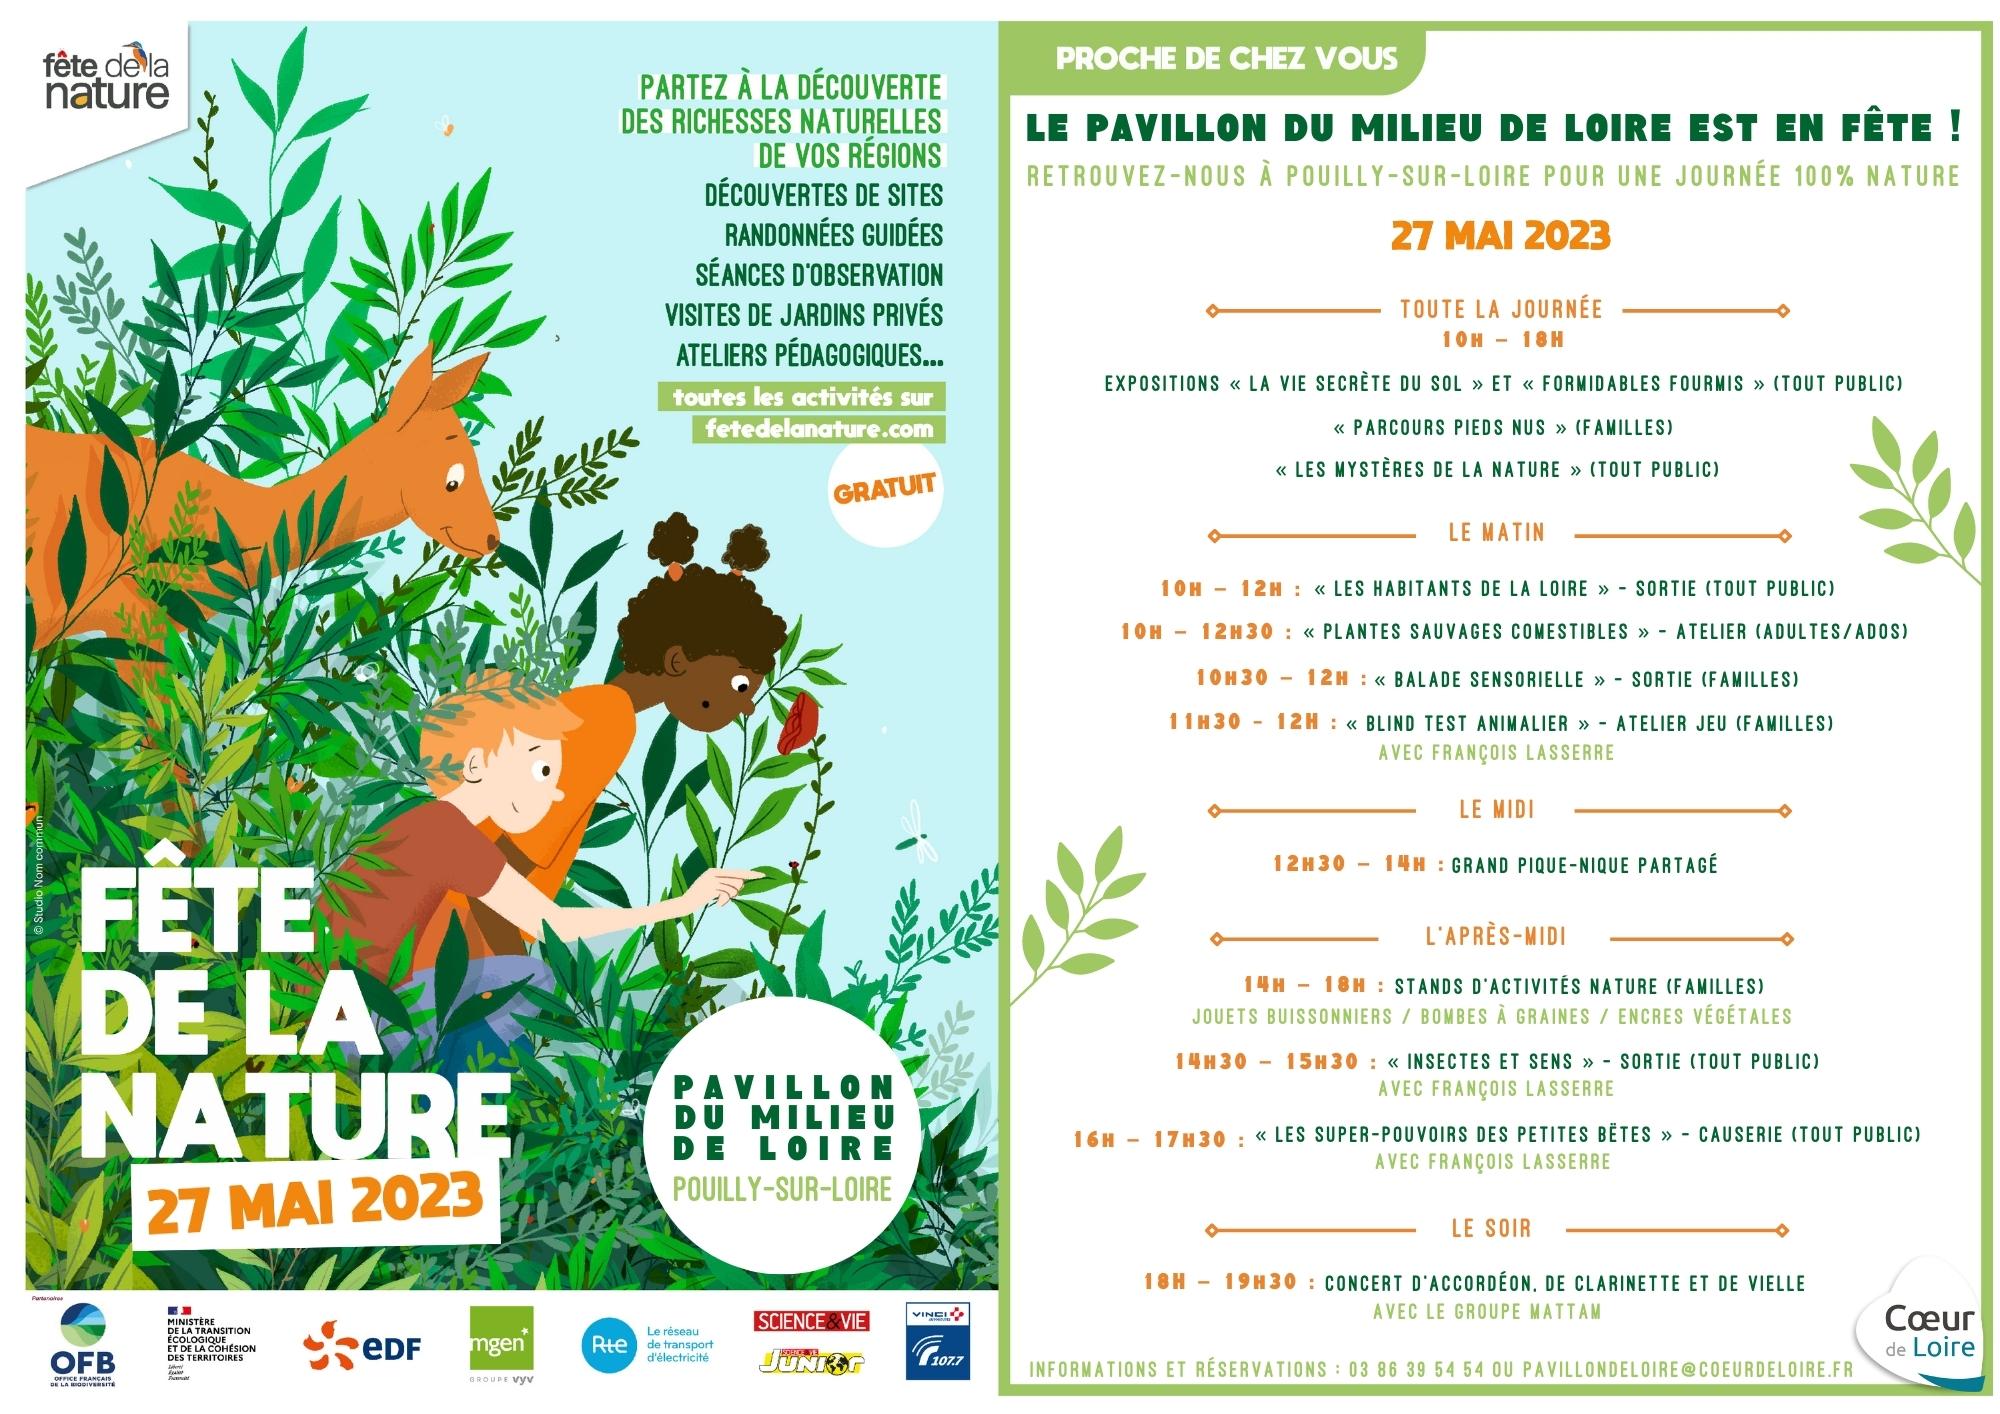 Samedi 27 mai-Fête de la Nature-Pavillon du Milieu de Loire